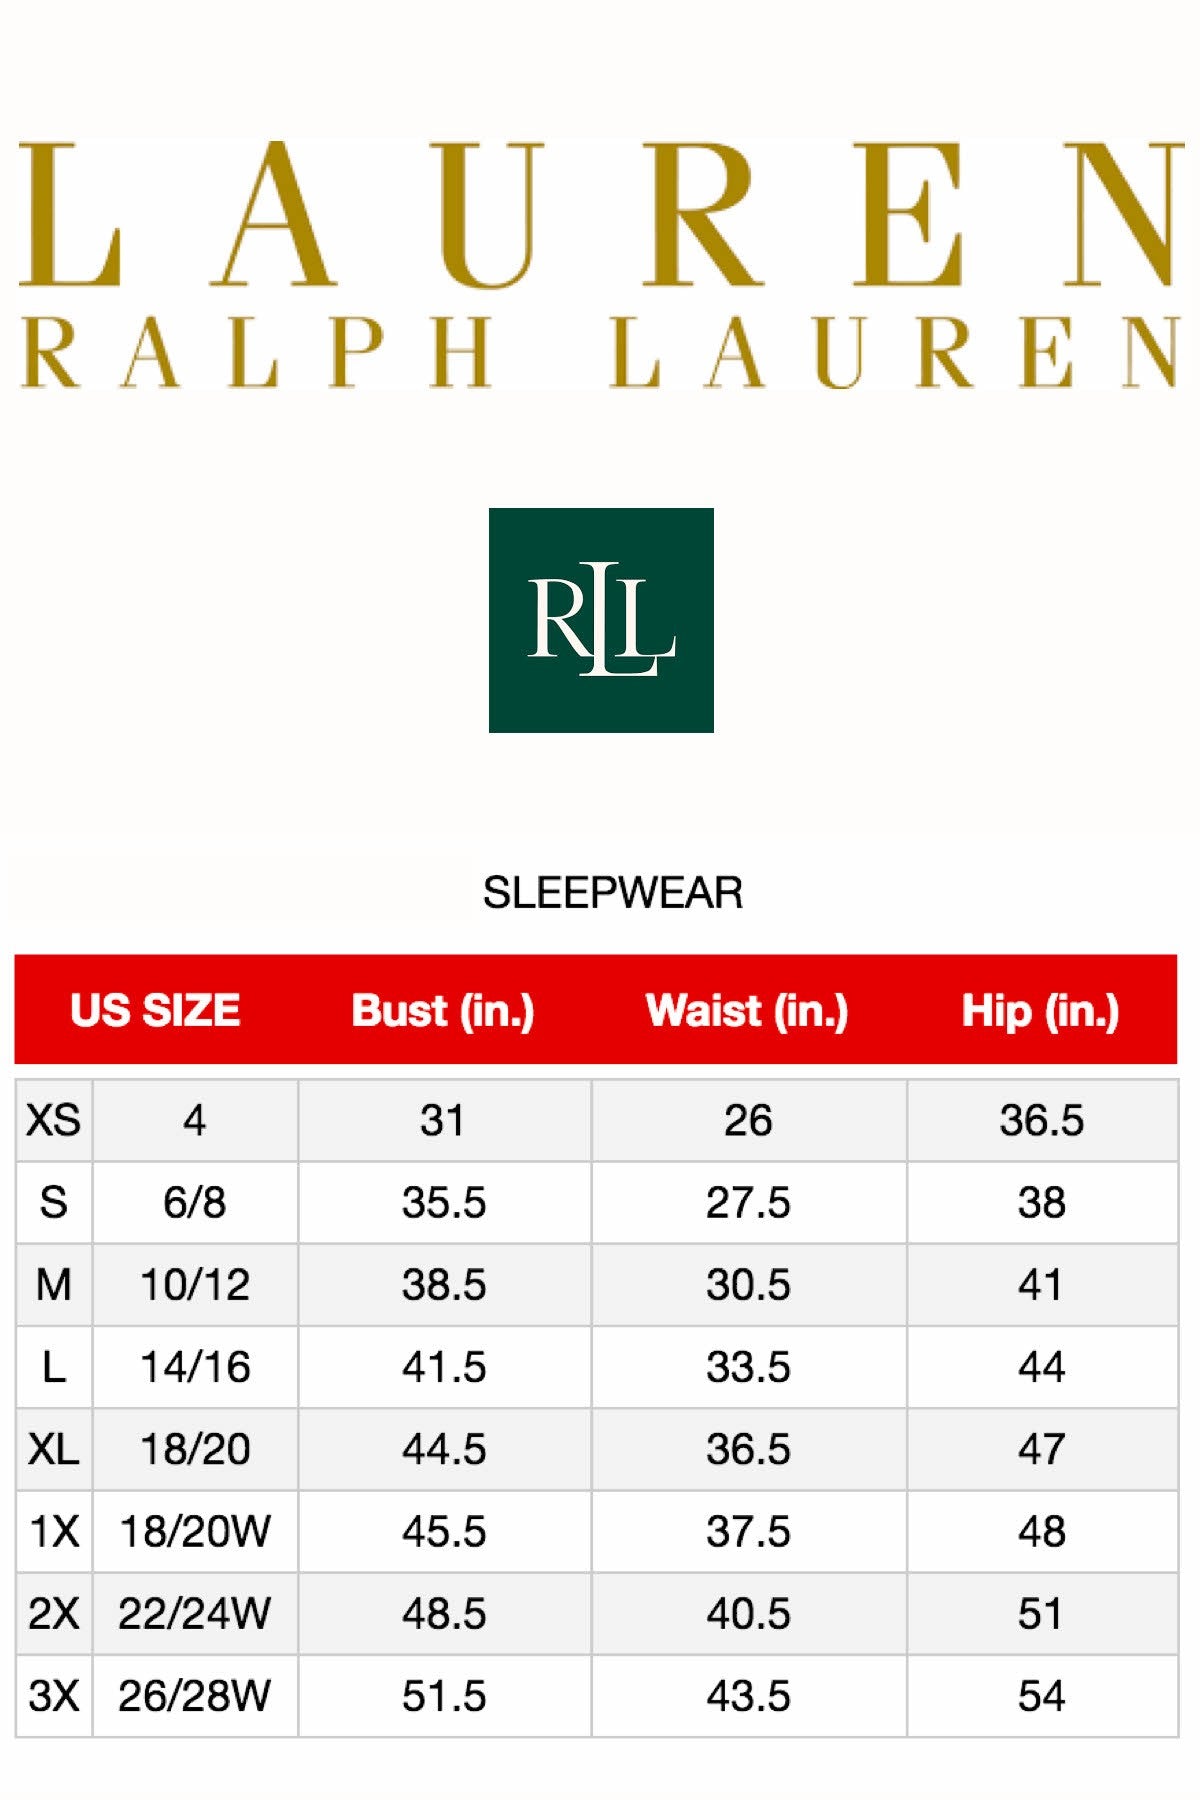 Lauren Ralph Lauren Heather-Grey Striped Fitted Lounge Top